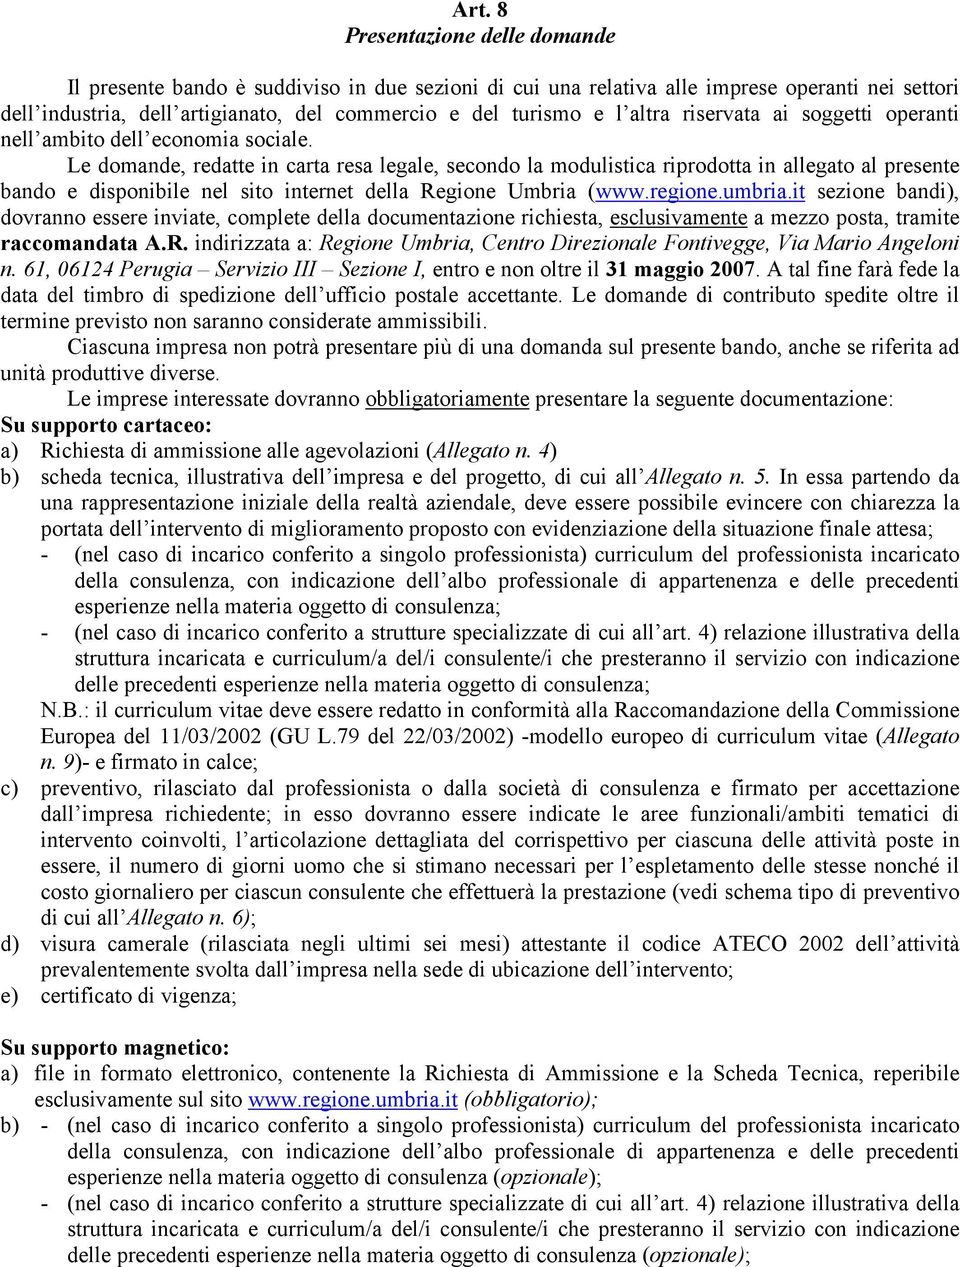 Le domande, redatte in carta resa legale, secondo la modulistica riprodotta in allegato al presente bando e disponibile nel sito internet della Regione Umbria (www.regione.umbria.